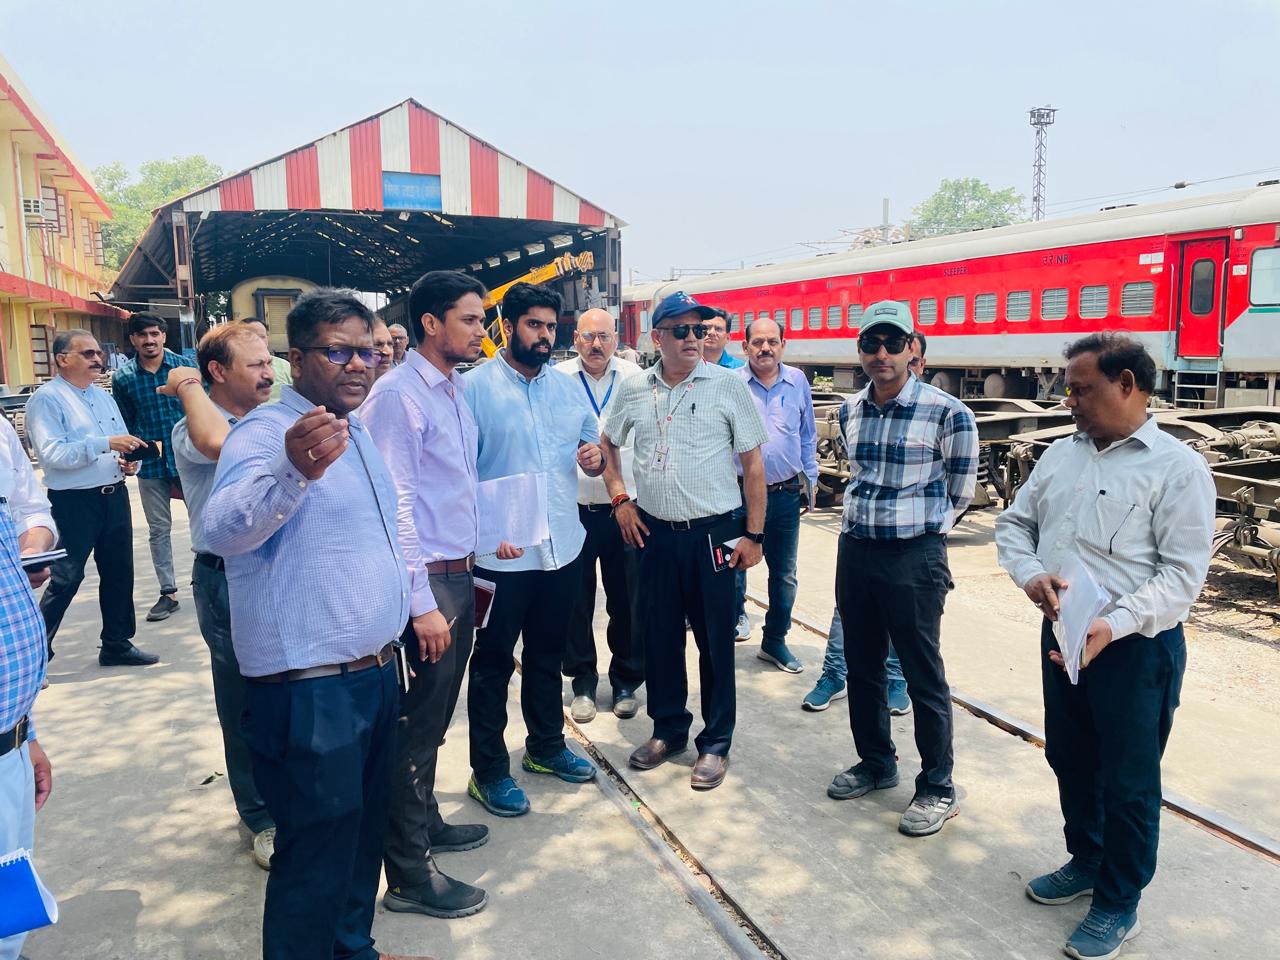 मंडल रेल प्रबंधक, उत्तर रेलवे, लखनऊ द्वारा  कोचिंग केयर  कॉम्प्लेस / सिक लाइन का दौरा